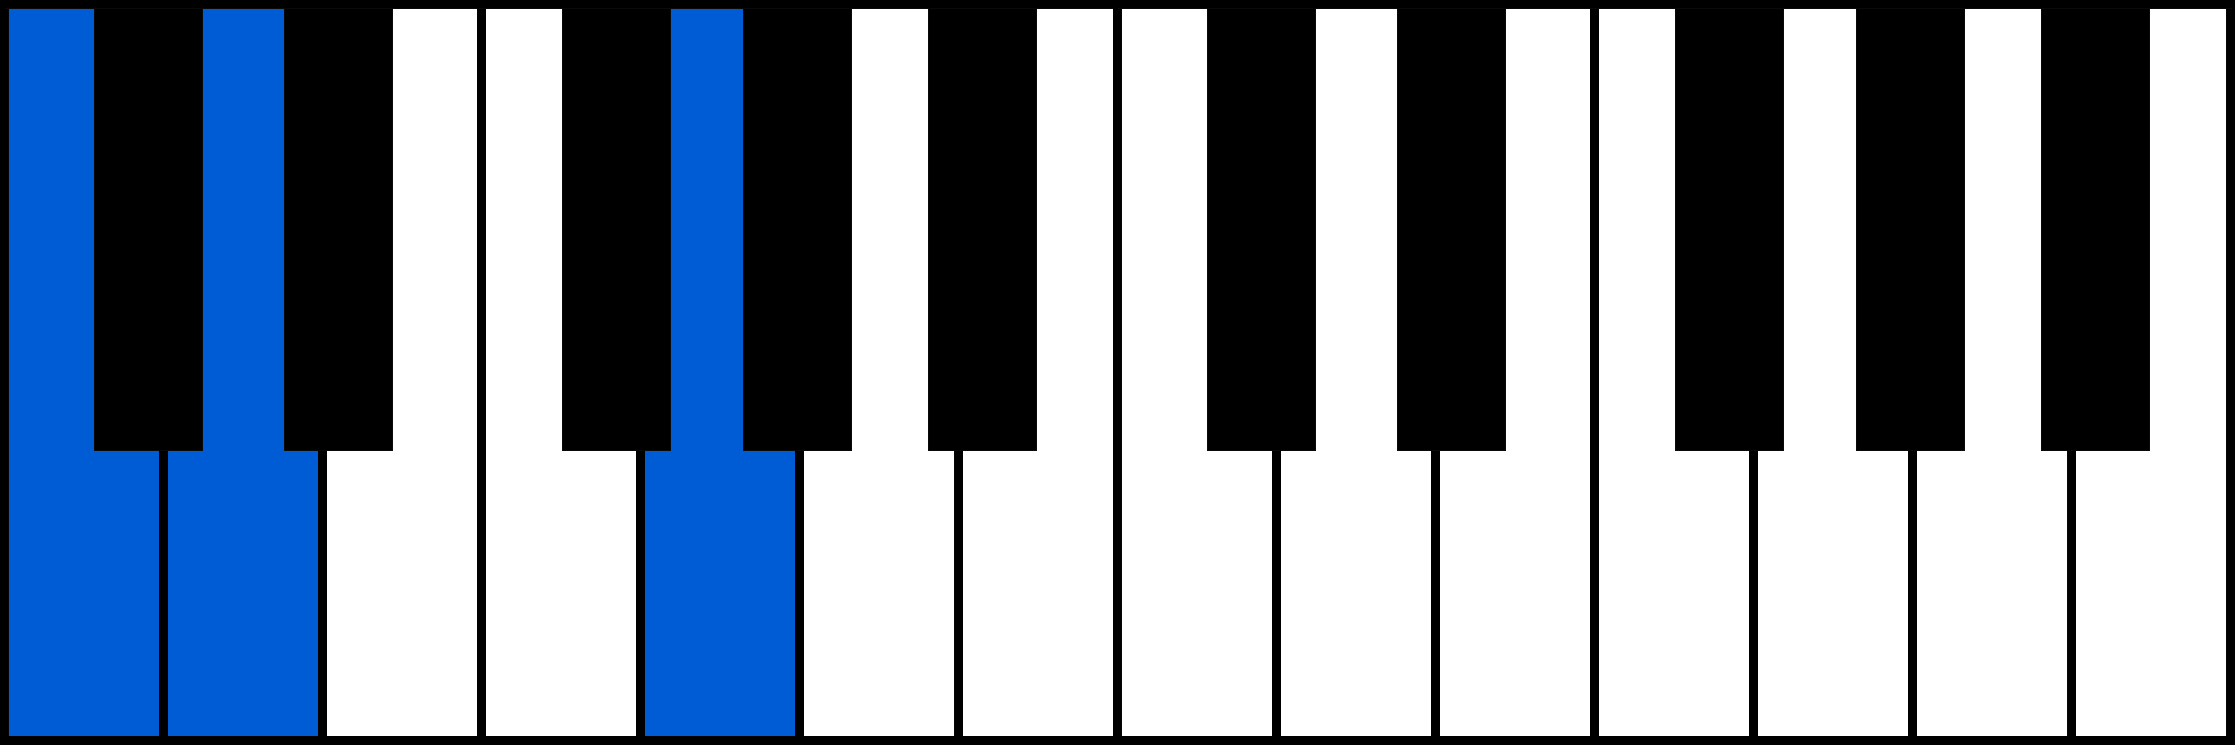 Csus2 piano chord fingering